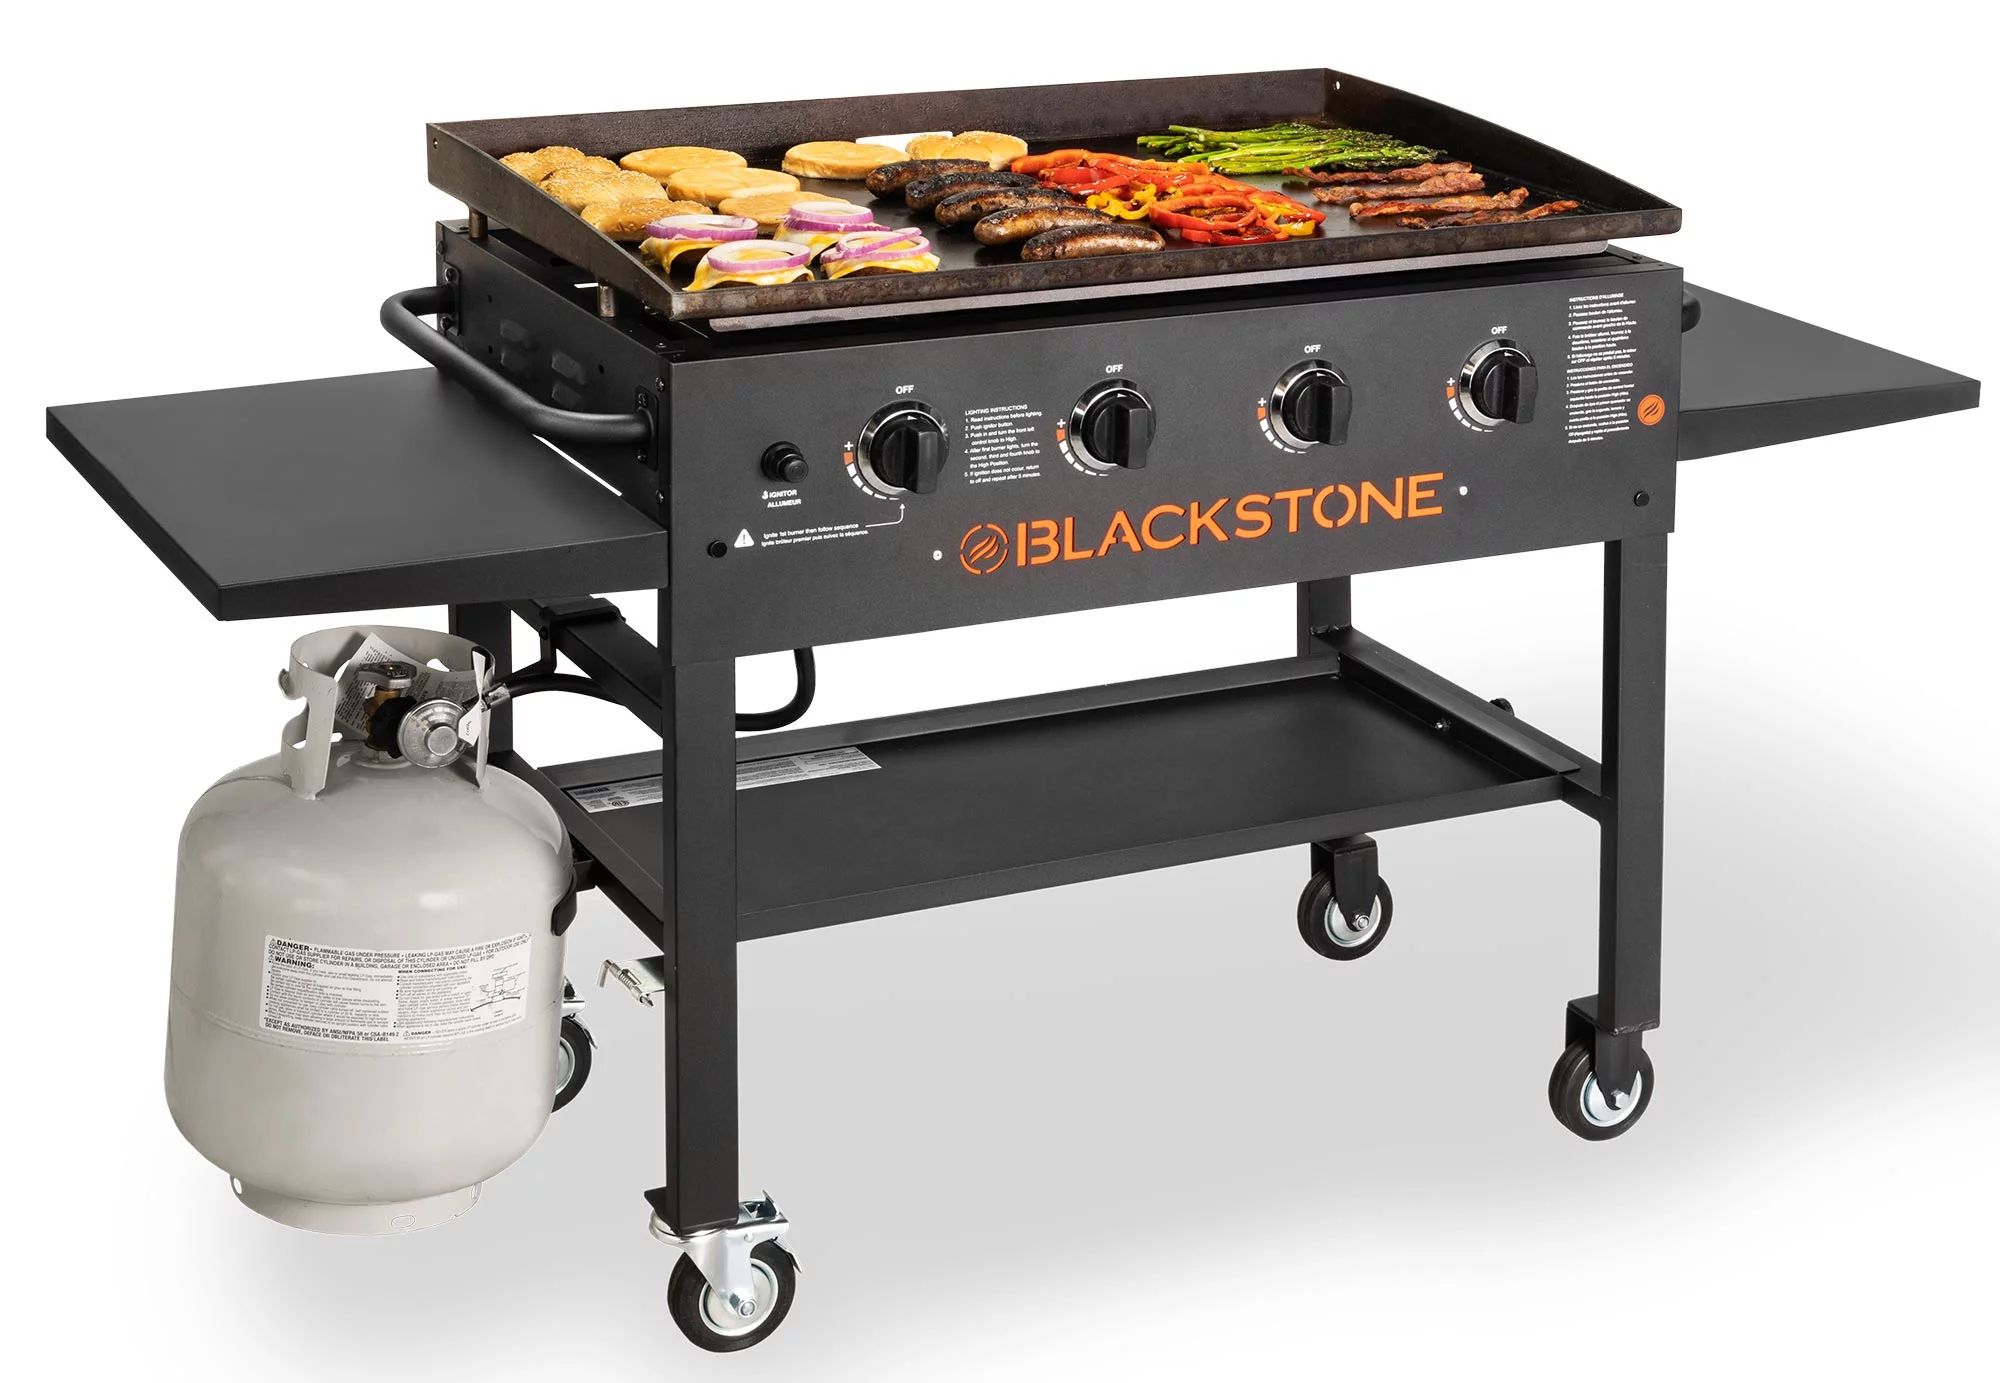 Blackstone 4-Burner 36" Griddle Cooking Station with Side Shelves - Walmart.com | Walmart (US)